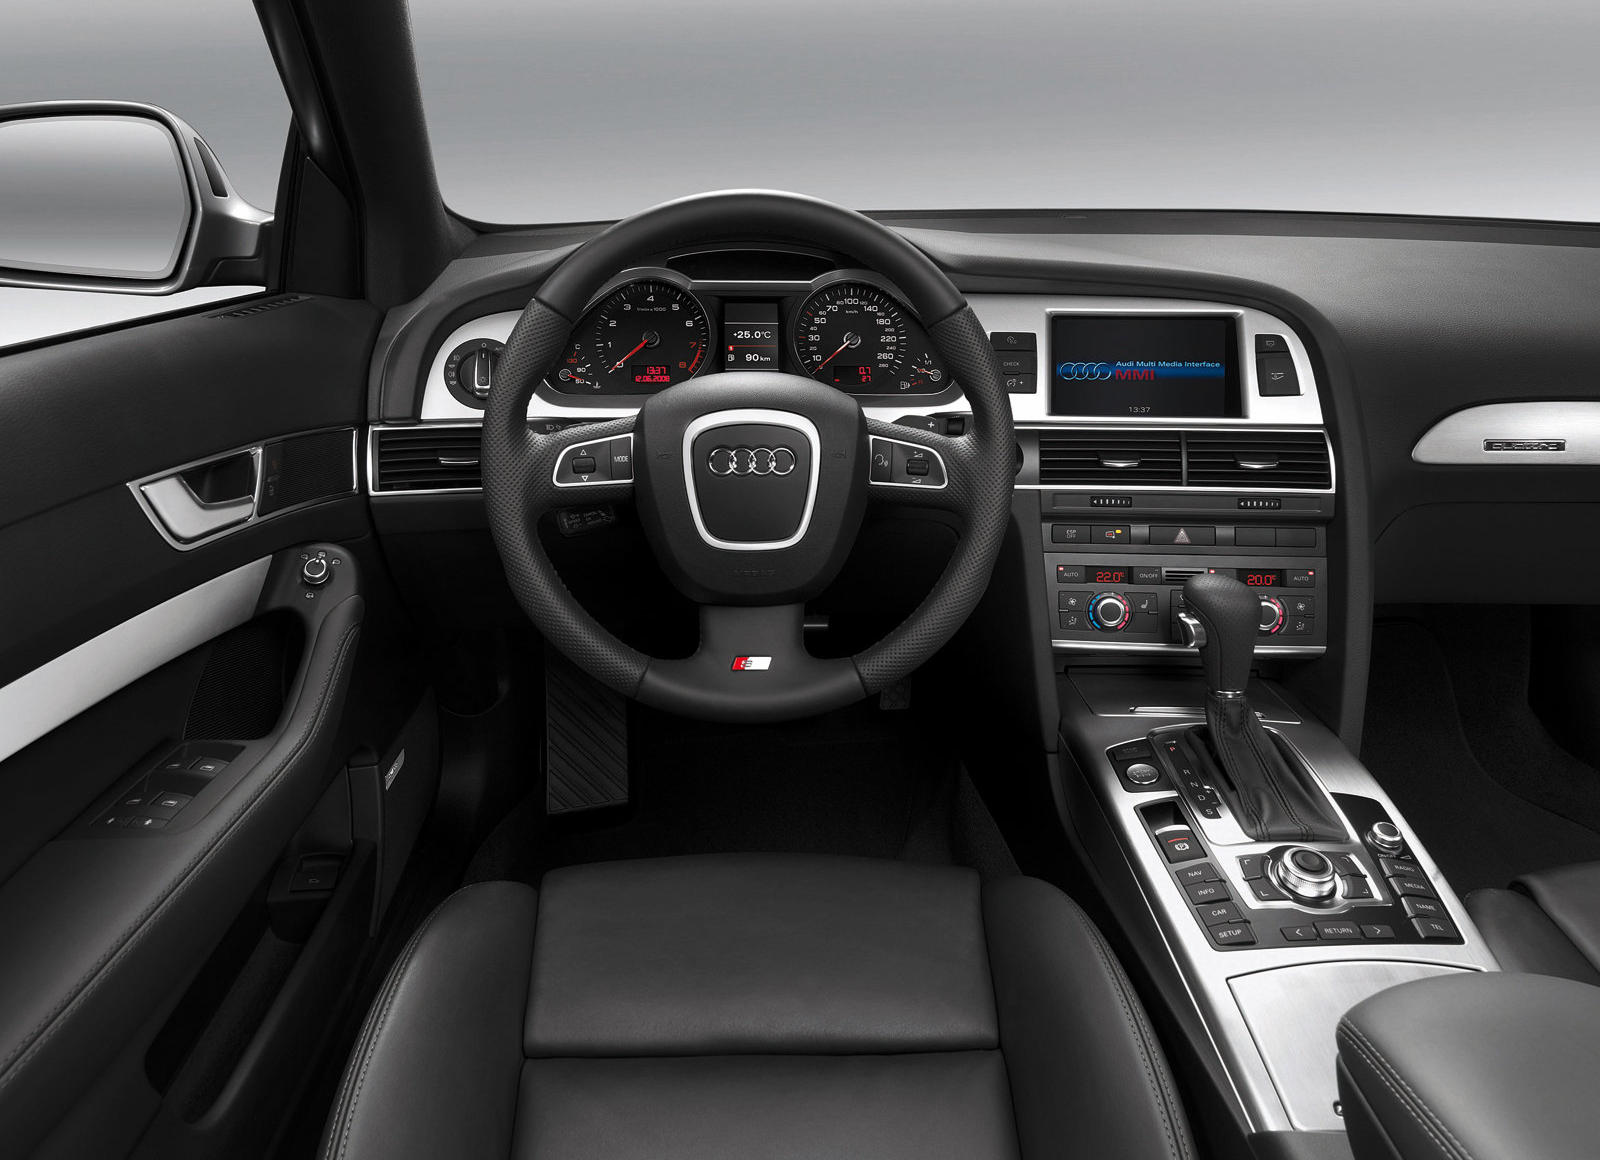 2009 Audi A6 Sedan Interior Photos | CarBuzz